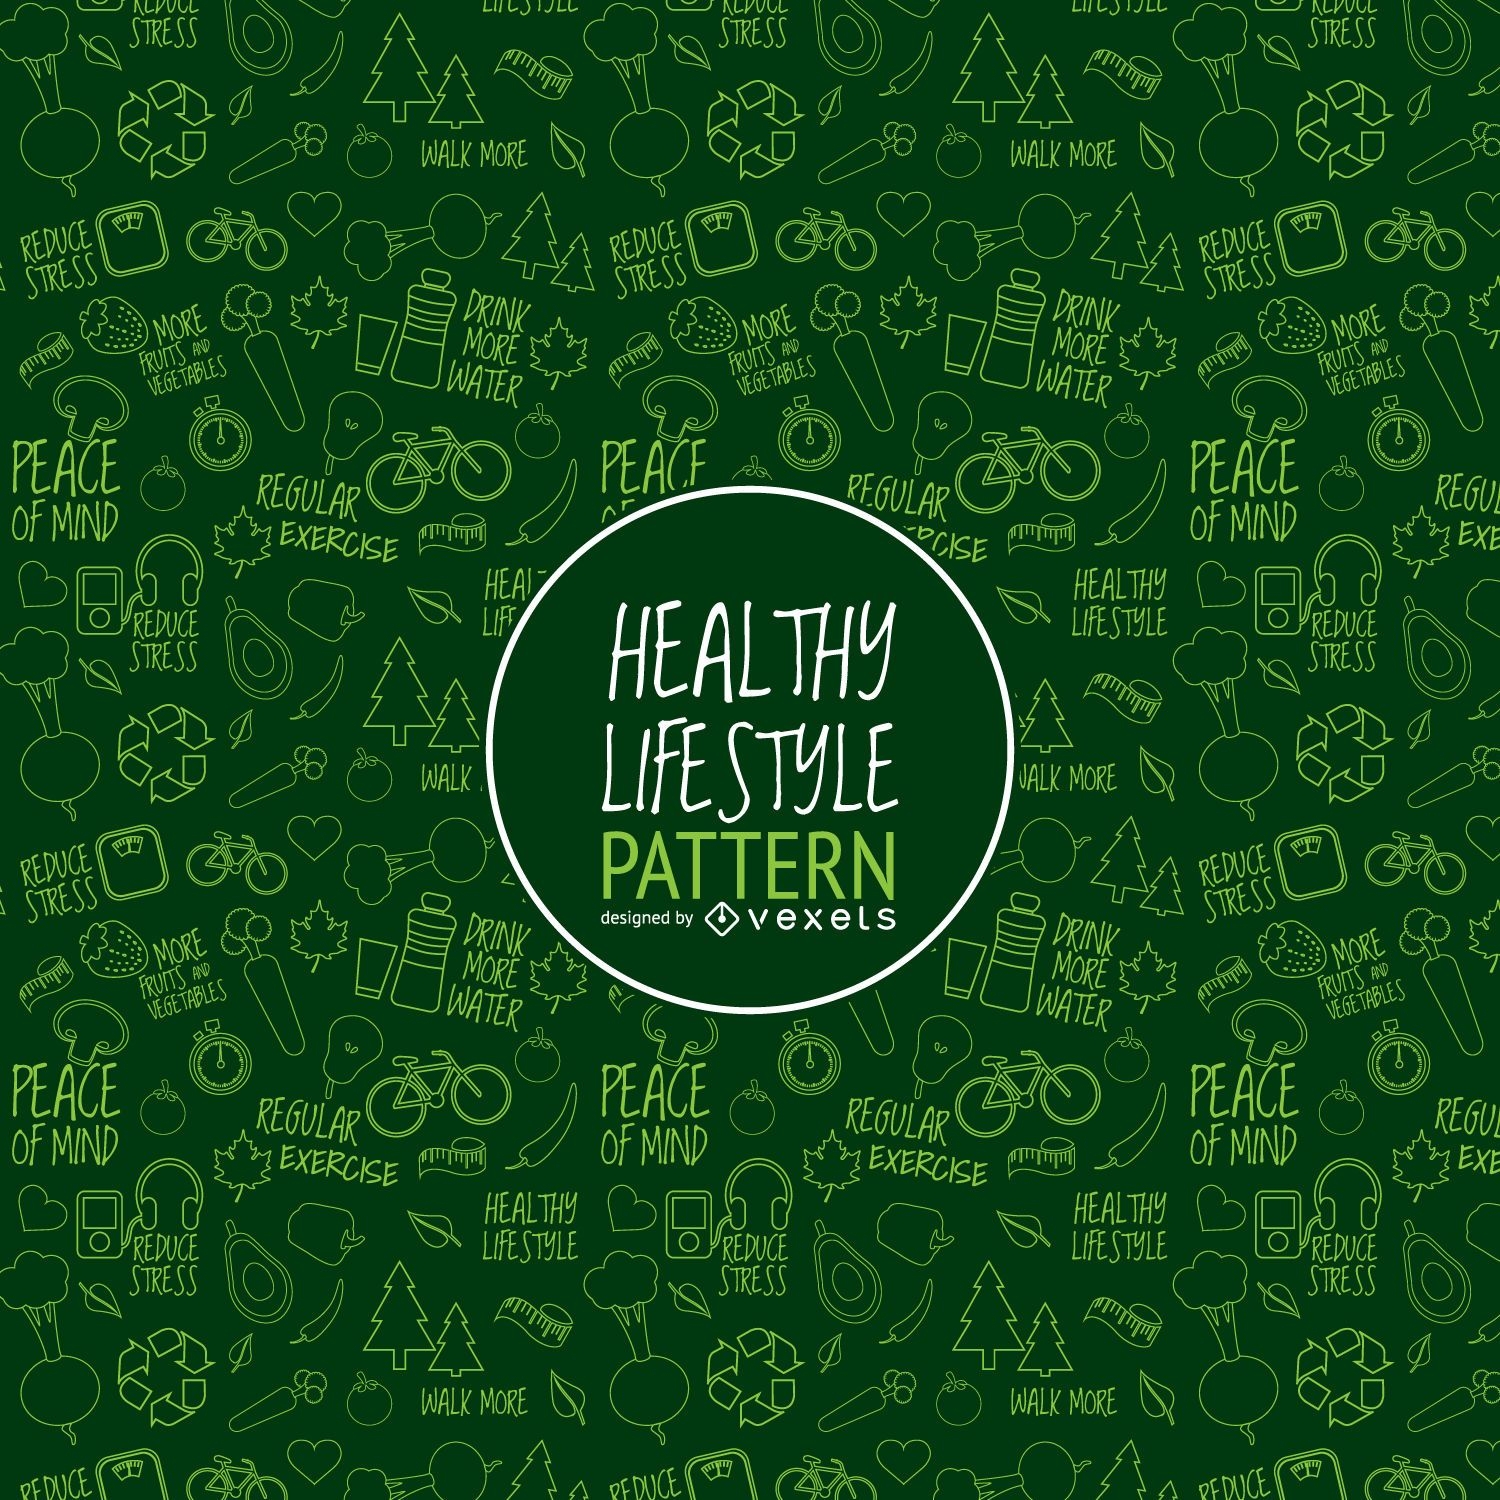 Patrón de estilo de vida saludable verde